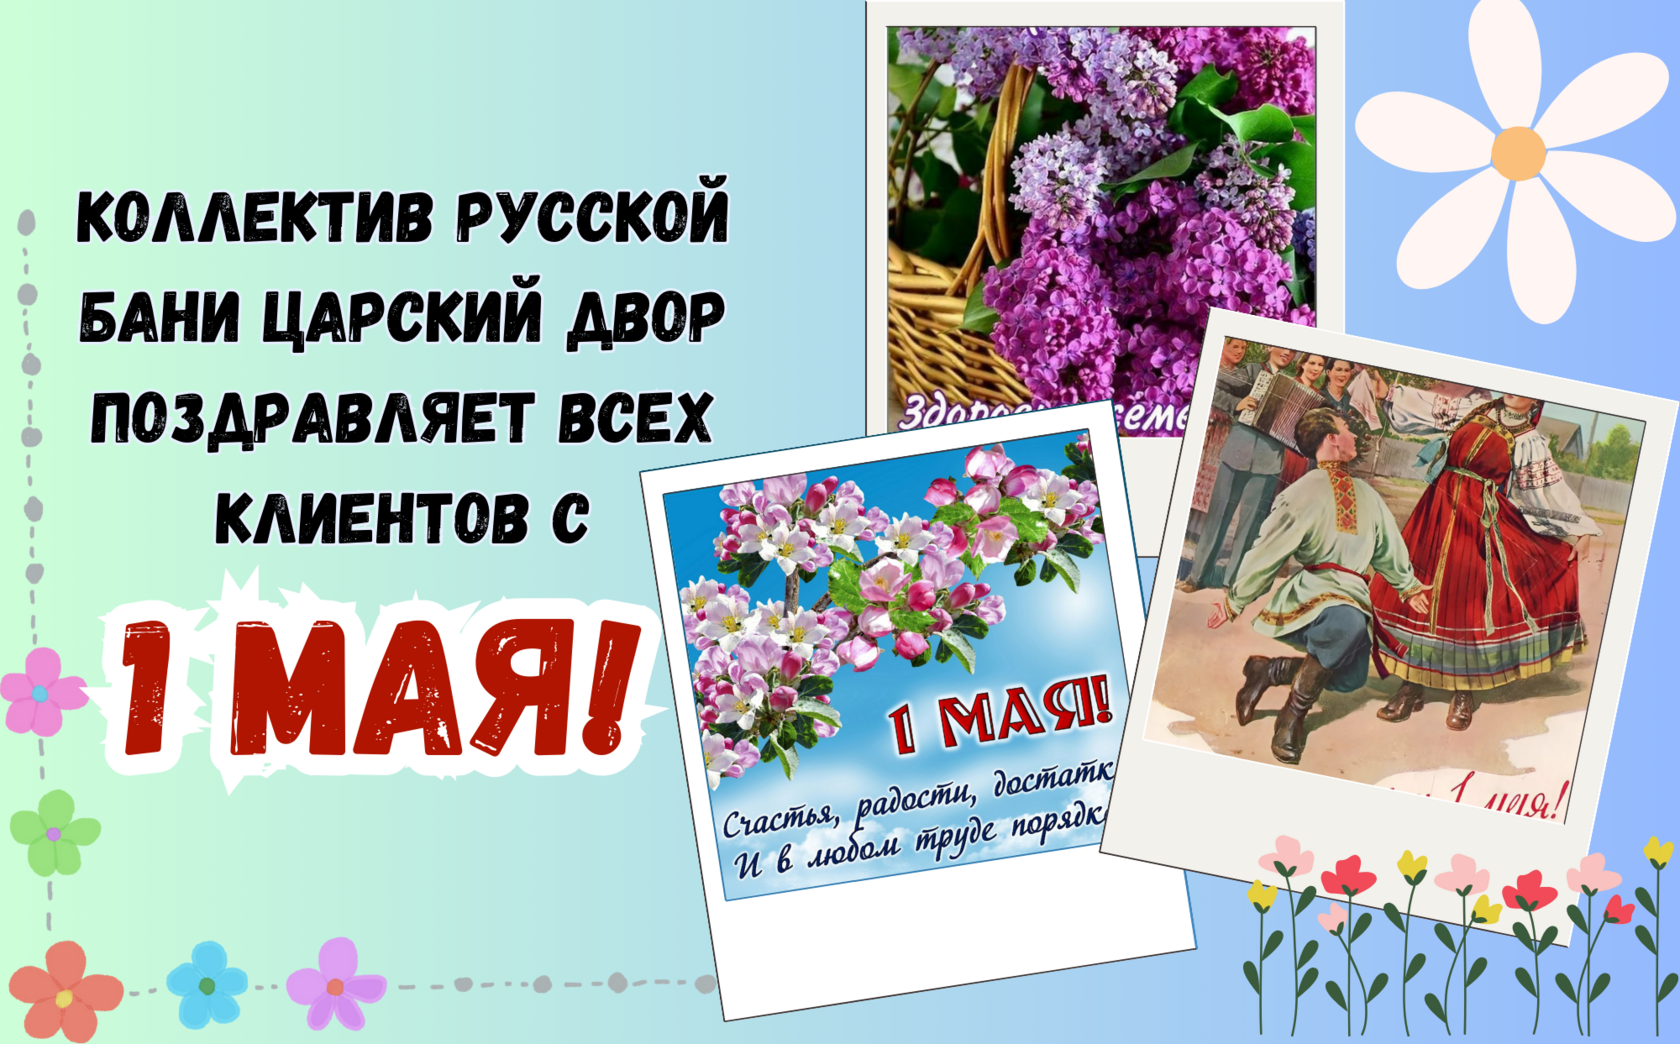 Поздравляем вас с 1 мая — праздником весны и труда!